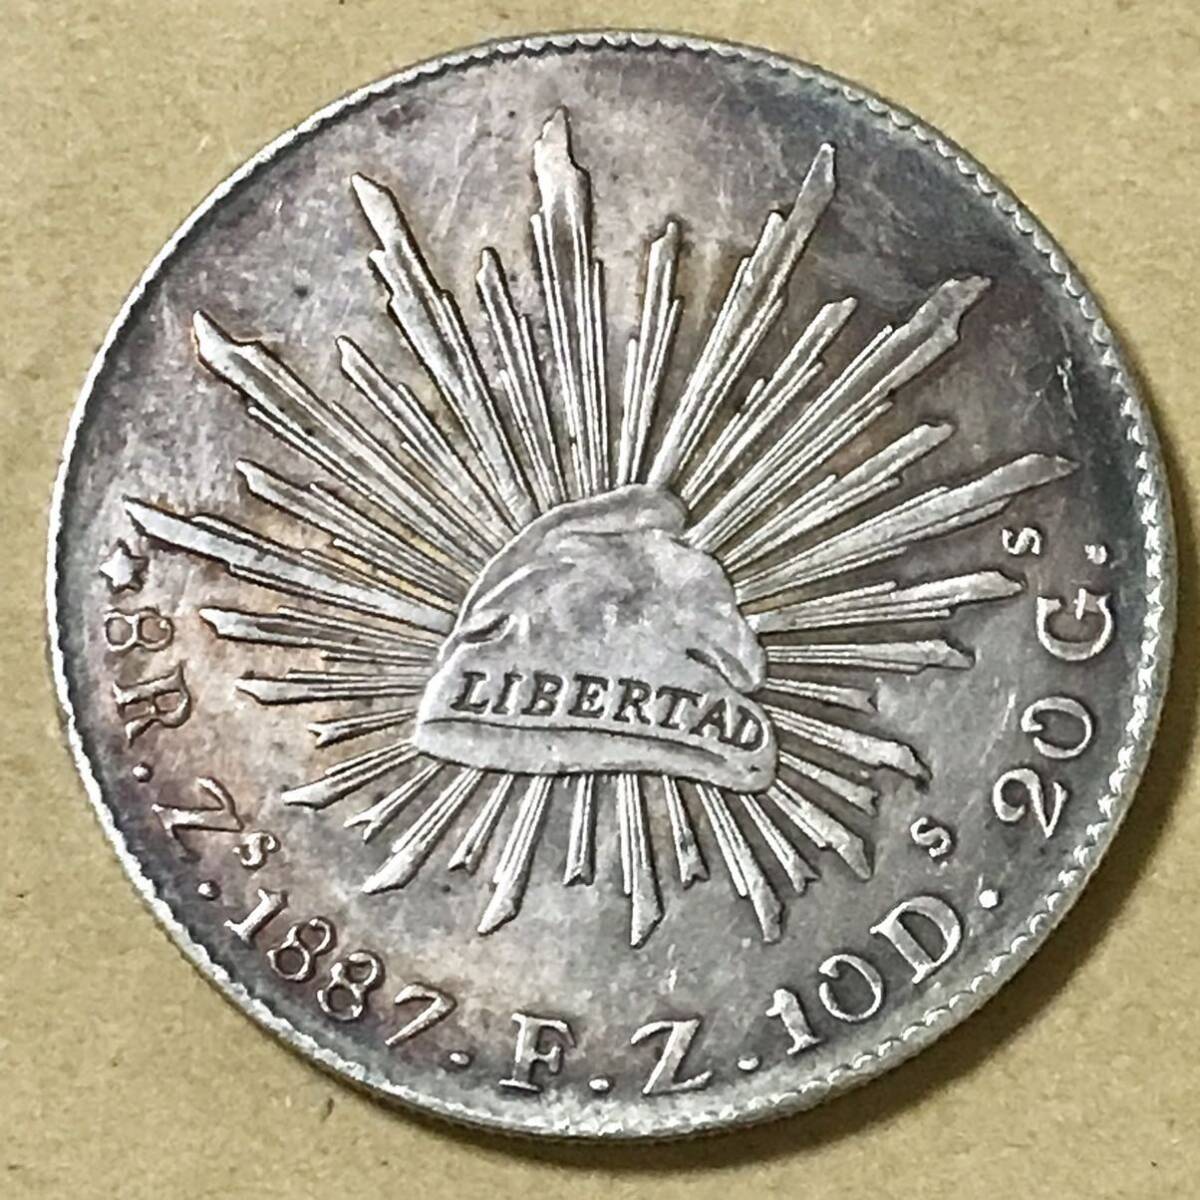 銀貨 1887年 8レアル メキシコ 1円銀貨 貿易銀 古銭 硬貨 コイン硬貨 古銭 貿易銀 コイン 竜 の画像2